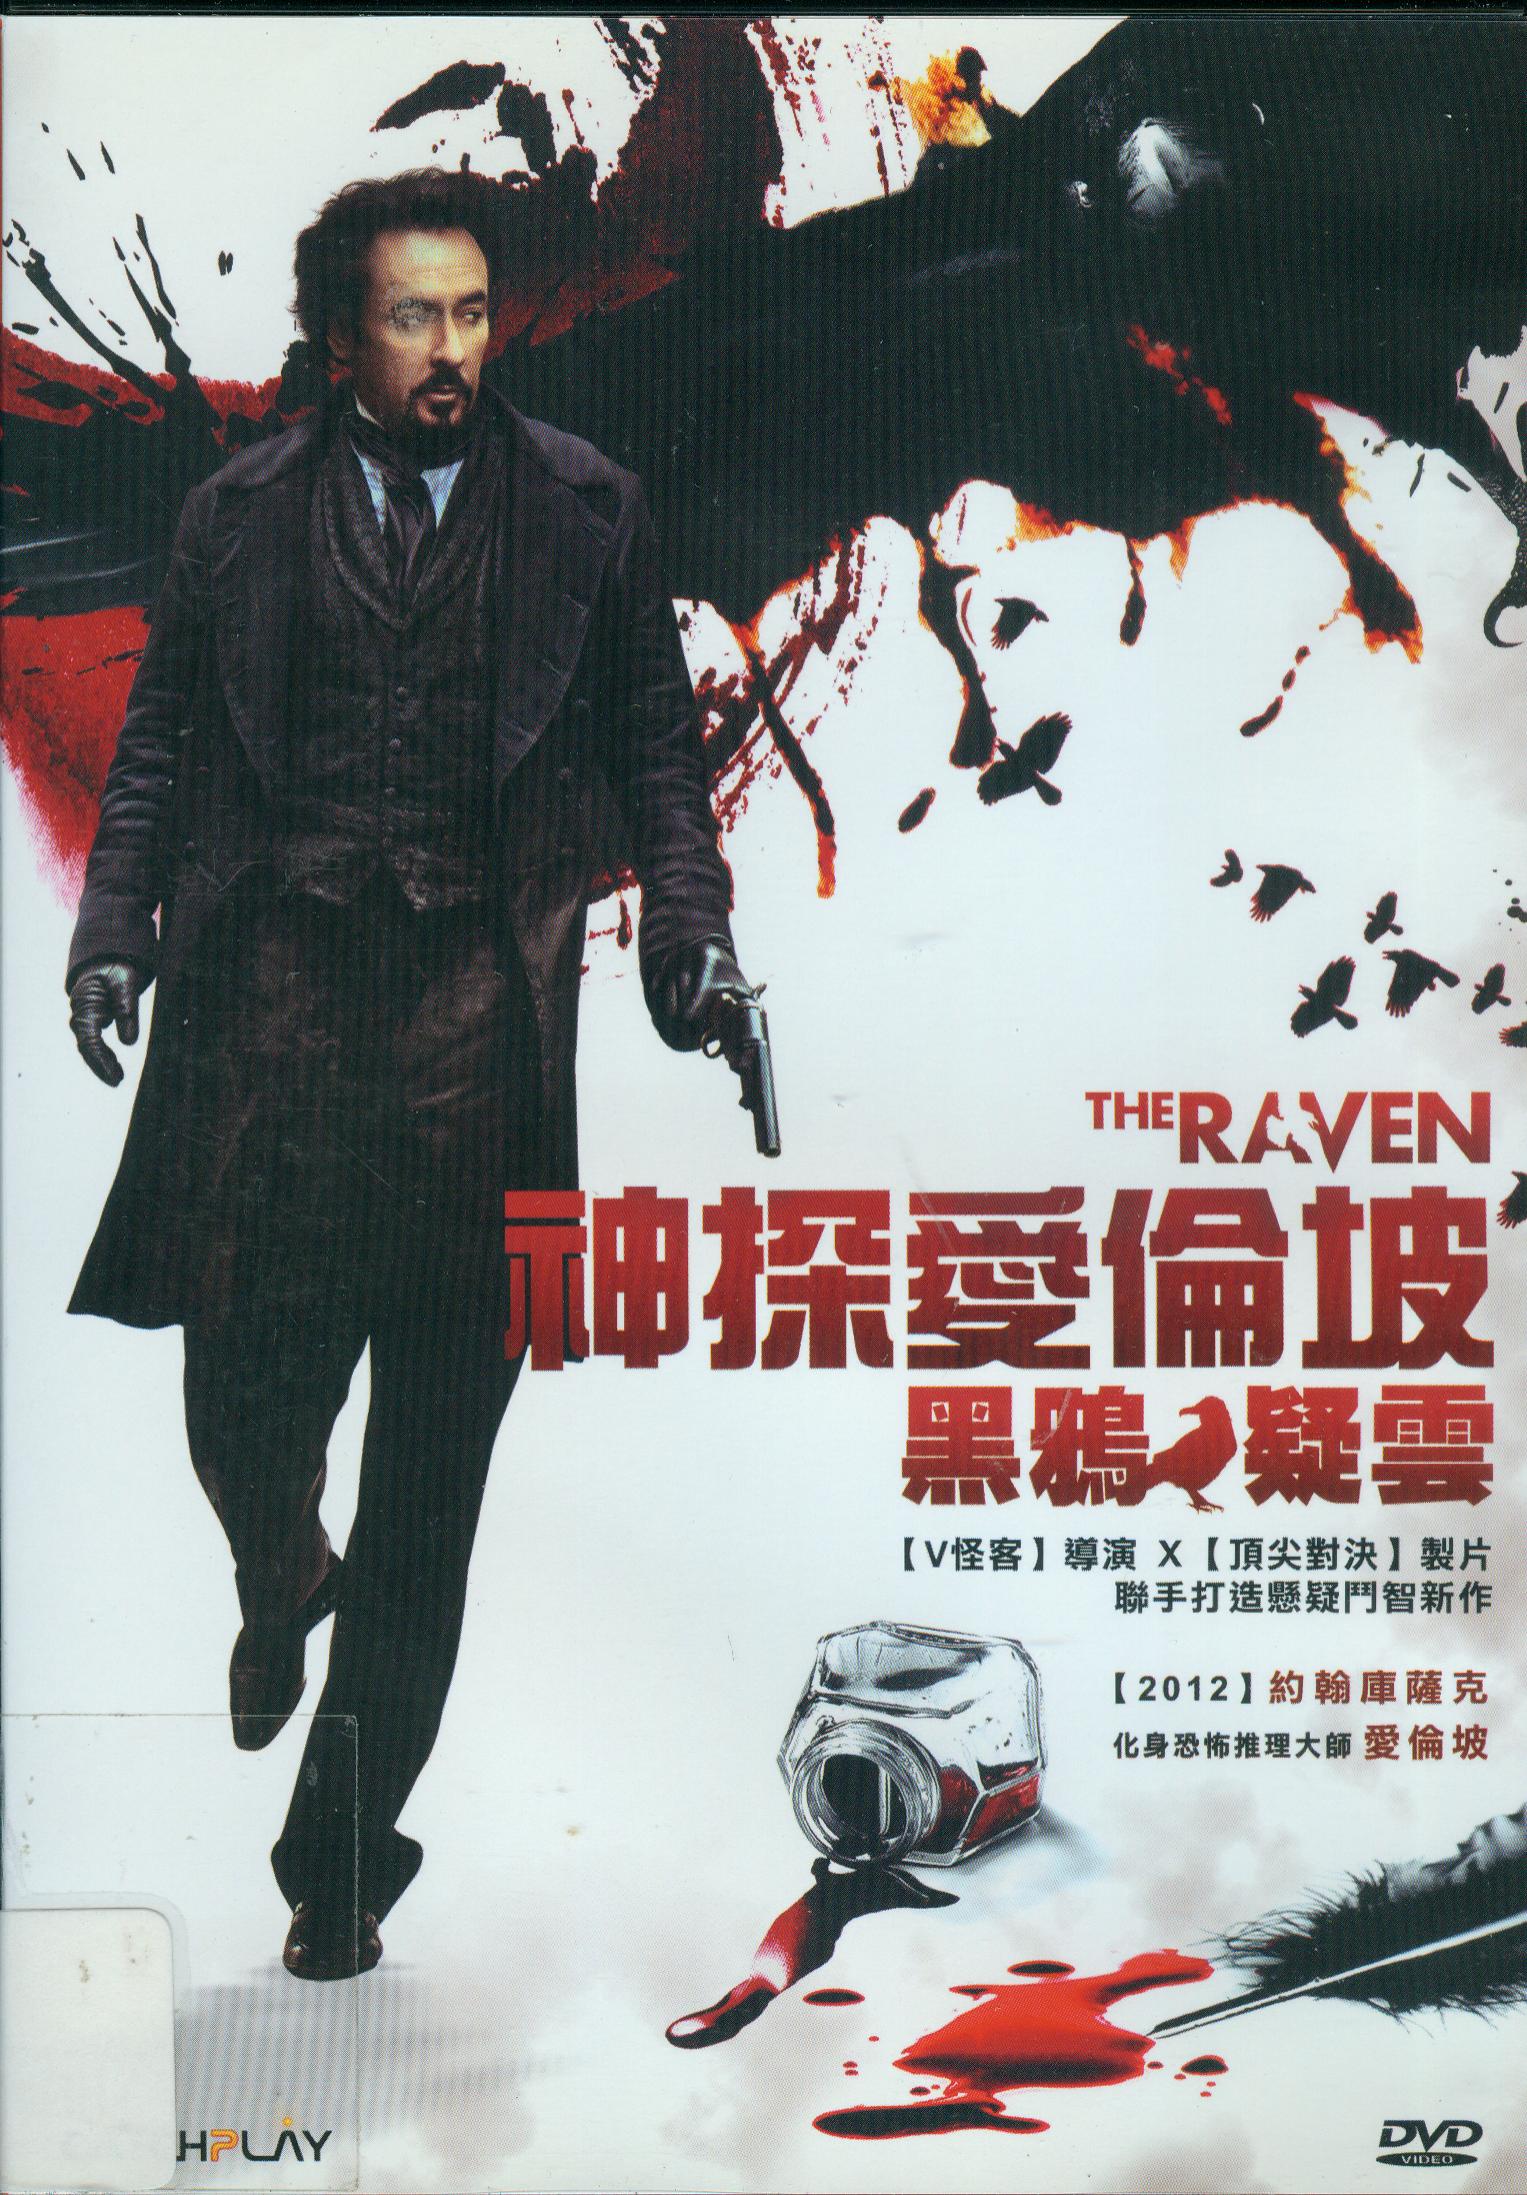 神探愛倫坡[輔導級:懸疑] : The raven : 黑鴉疑雲